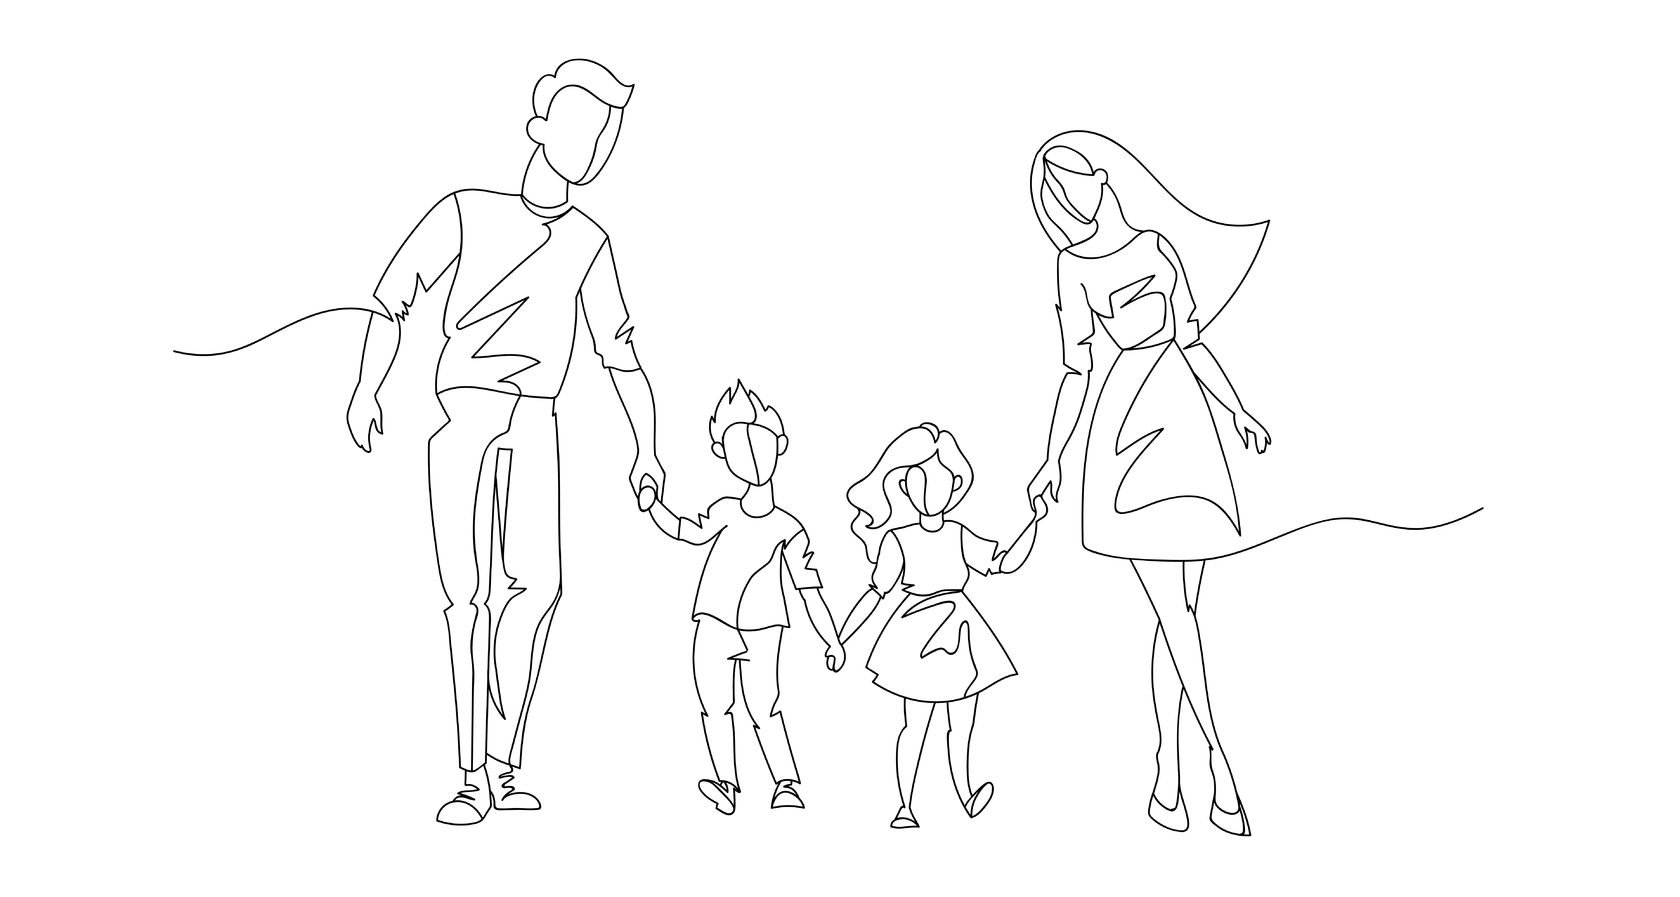 Семья контурный рисунок